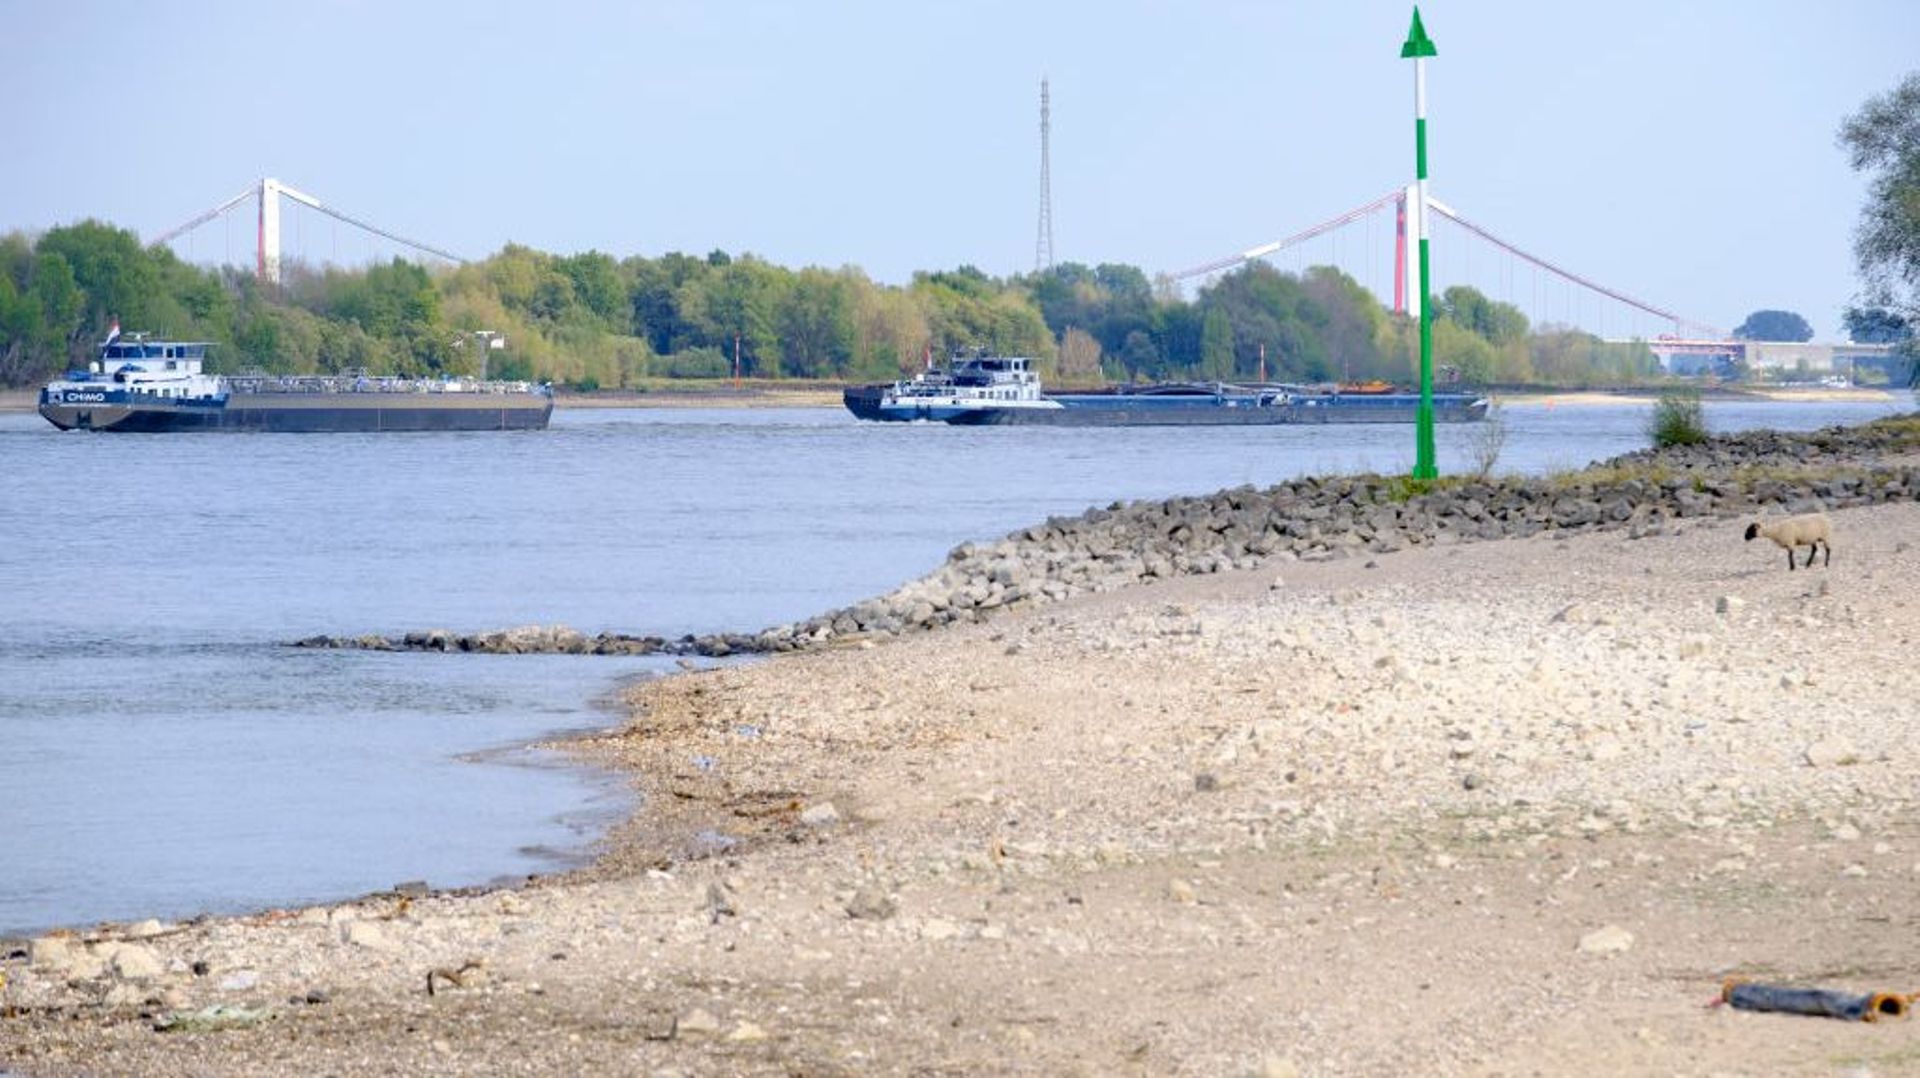 En raison de la sécheresse actuelle, les niveaux des cours d'eau et des rivières d'Europe atteignent des niveaux historiquement bas. Le Rhin le 23 août 2022 à Salmorth, en Allemagne.